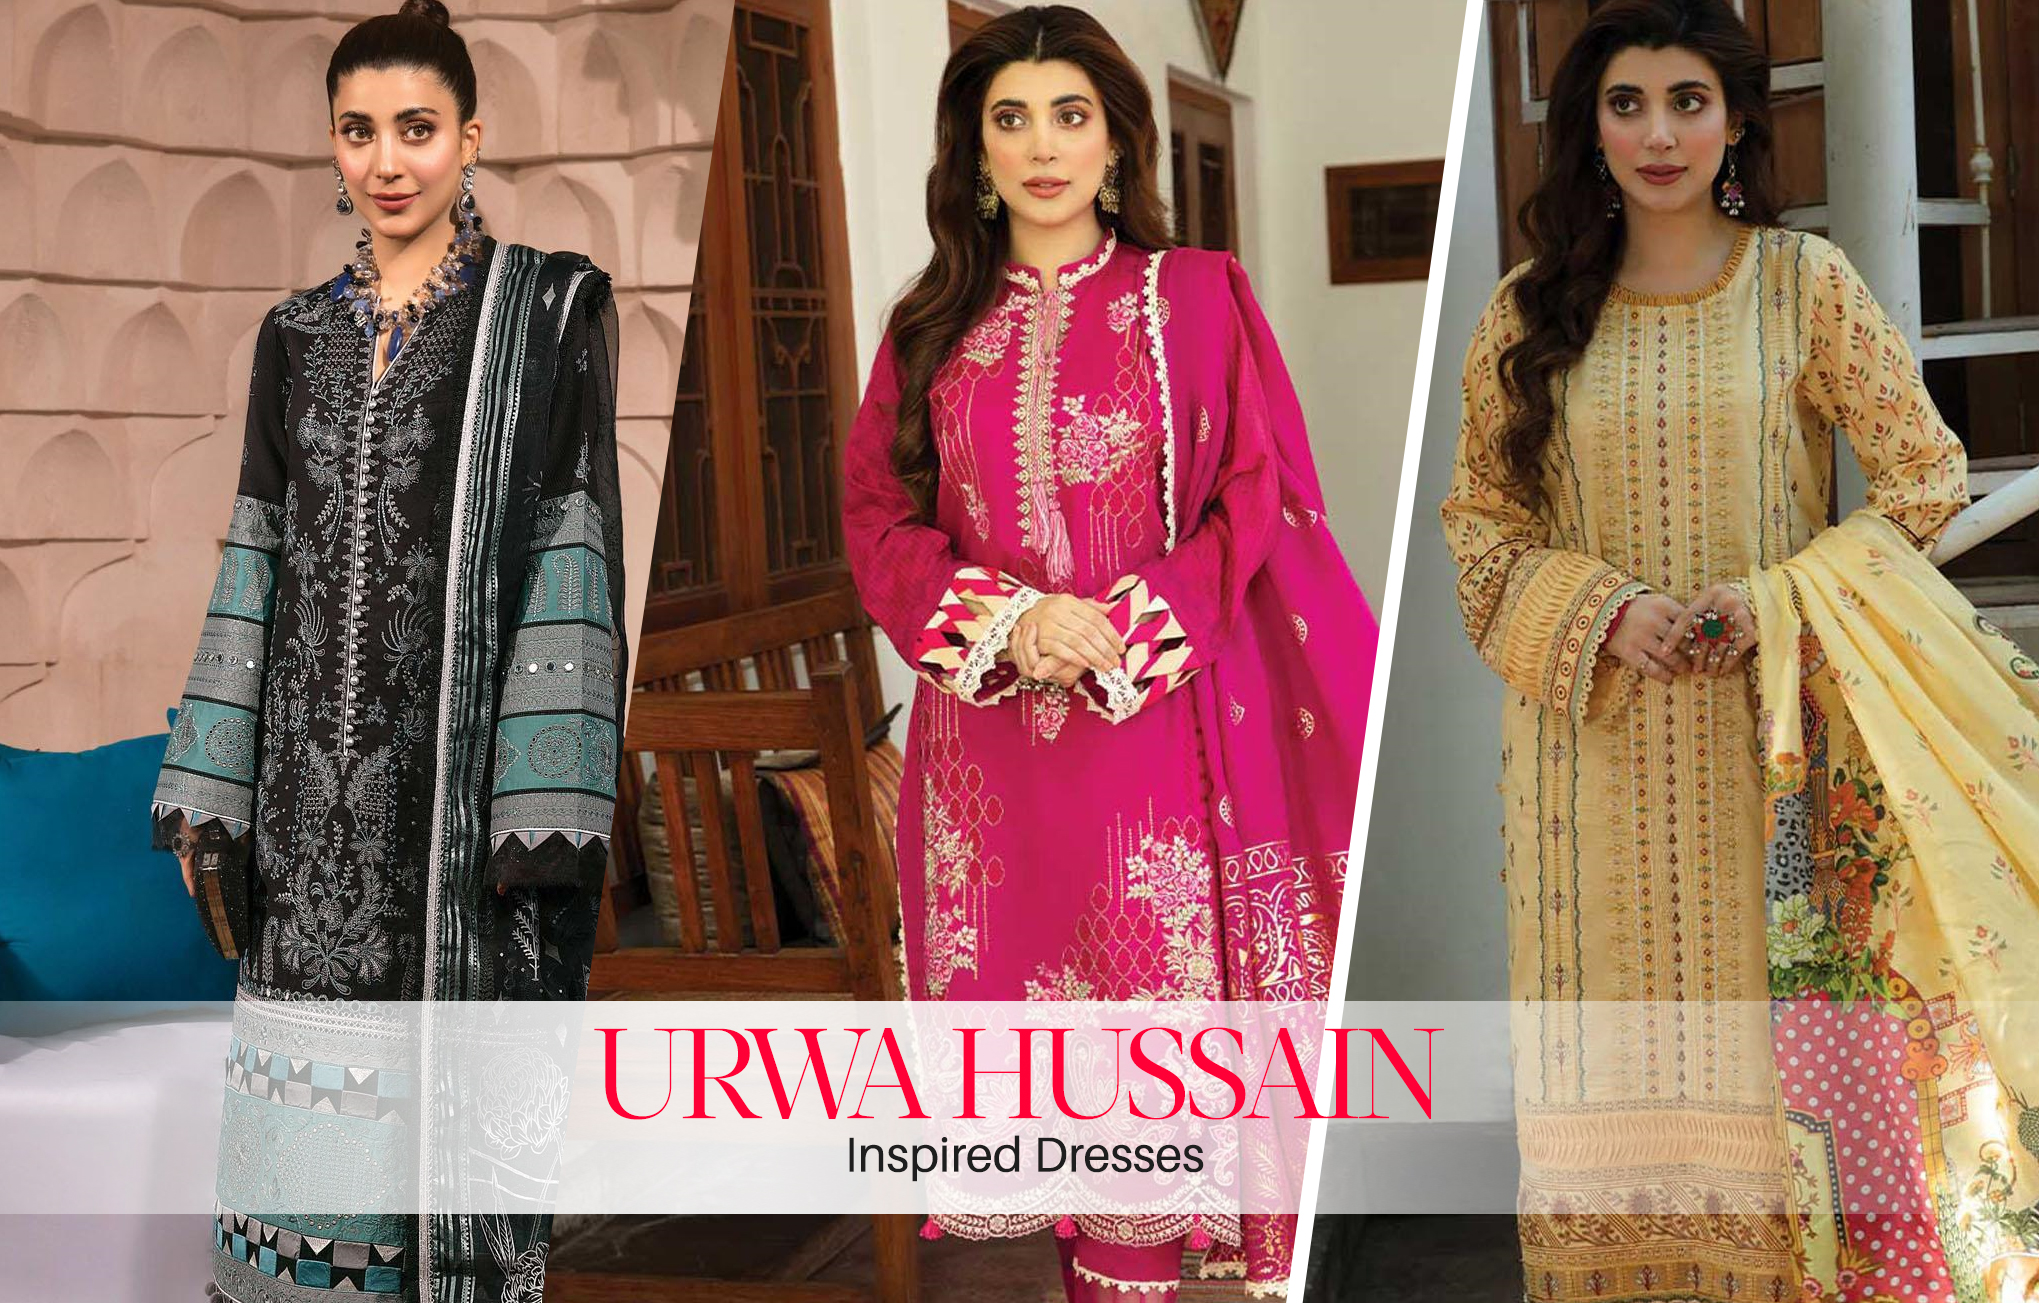 URWA HUSSAIN INSPIRED DRESSES